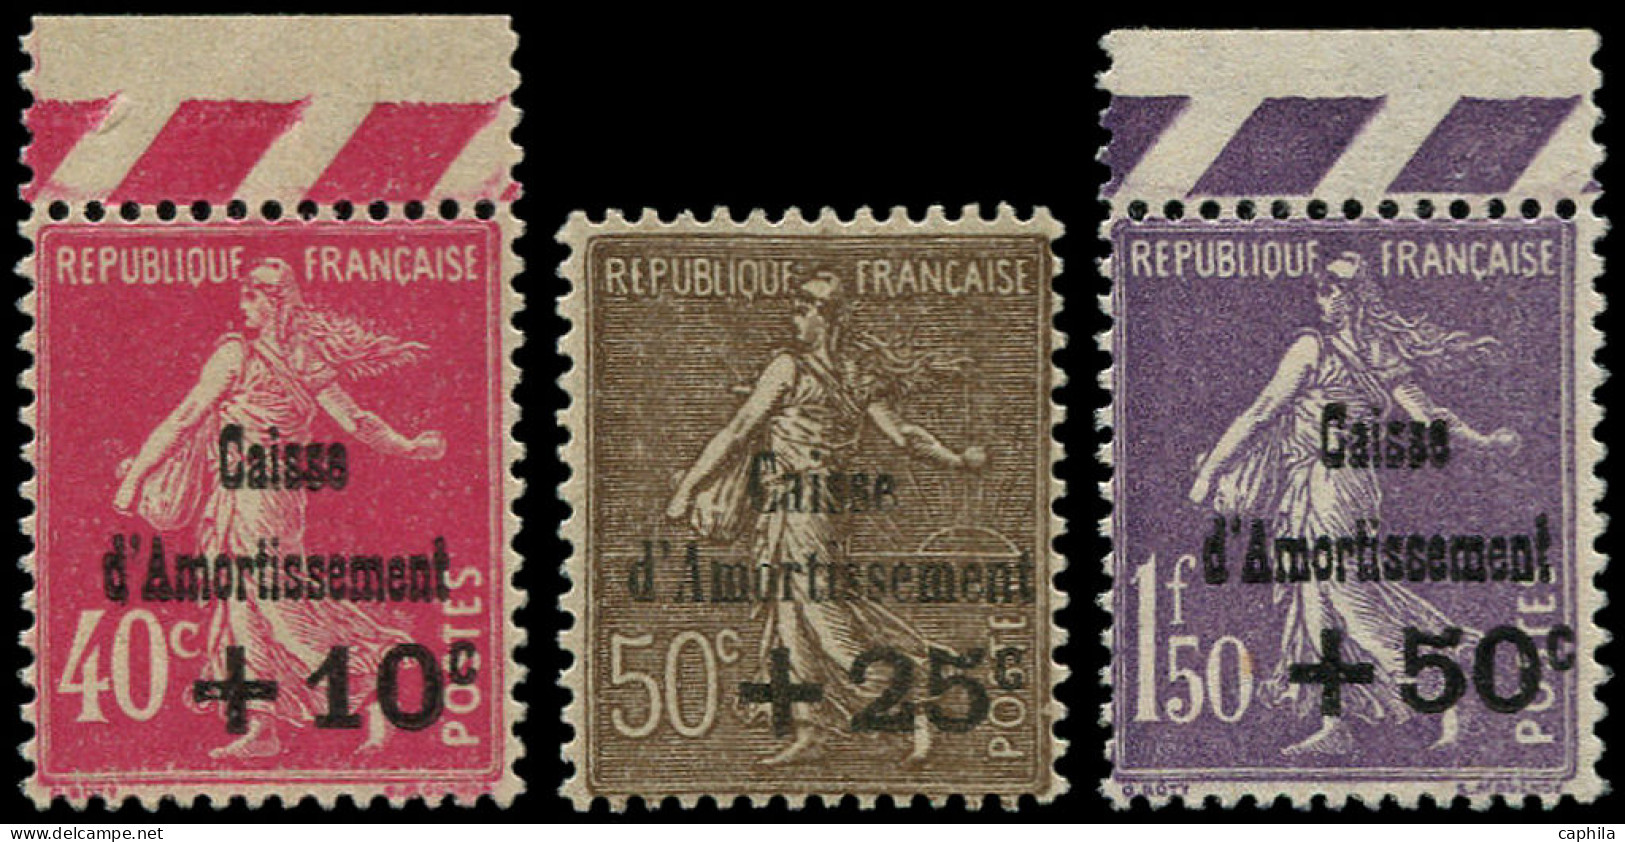 ** FRANCE - Poste - 266/68, Dont 266 Et 268 Bord De Feuille: 4ème Caisse D'Amortissement - Unused Stamps